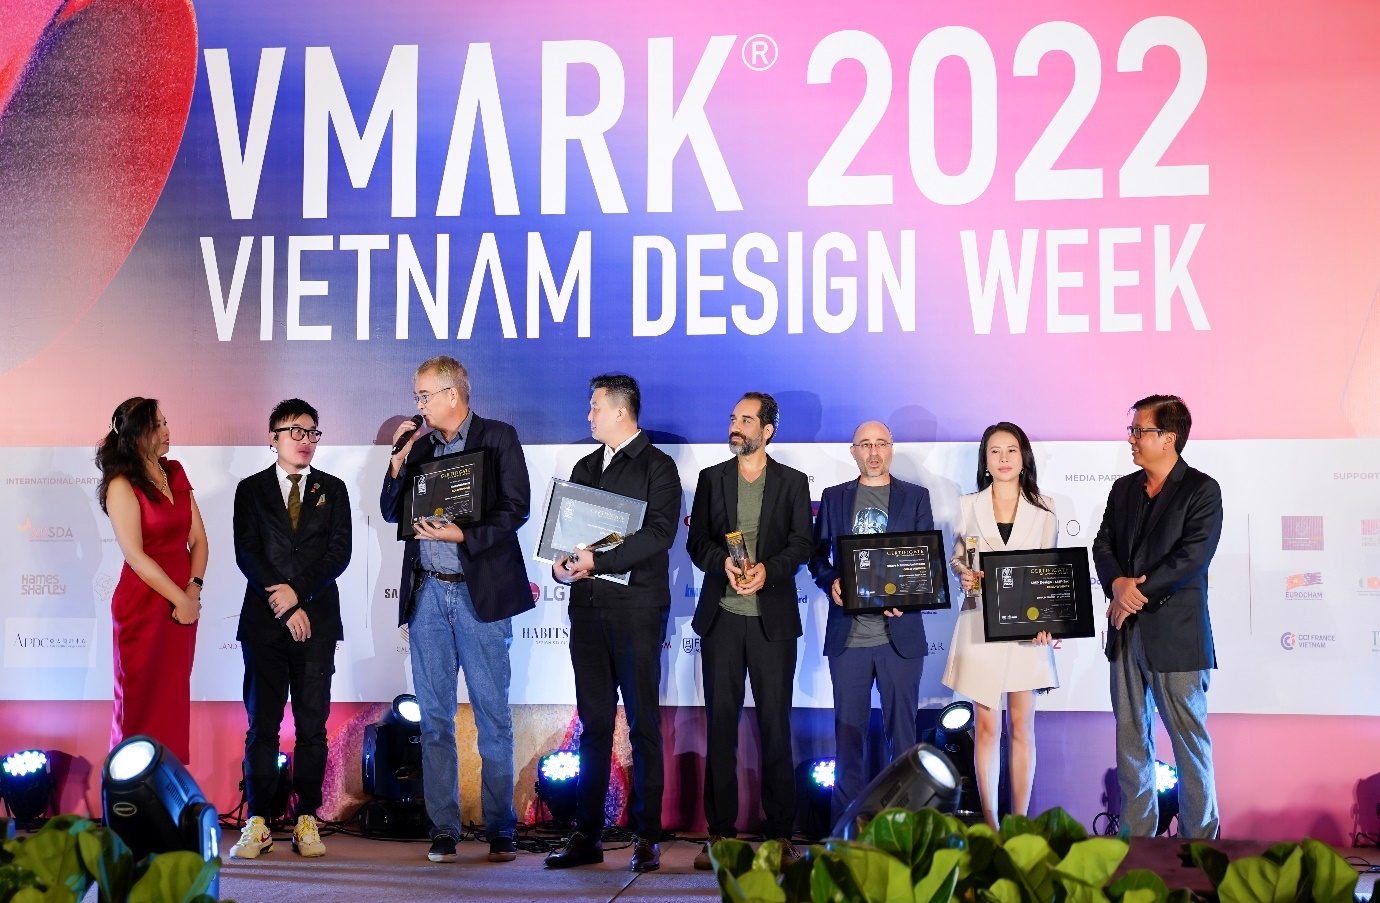 Bà Nguyễn Thị Lan Phương - Chủ tịch HĐQT kiêm nhà sáng lập công ty LMP (thứ hai từ phải sang) nhận cúp vàng tại giải thưởng thiết kế Việt Nam VMARK 2022